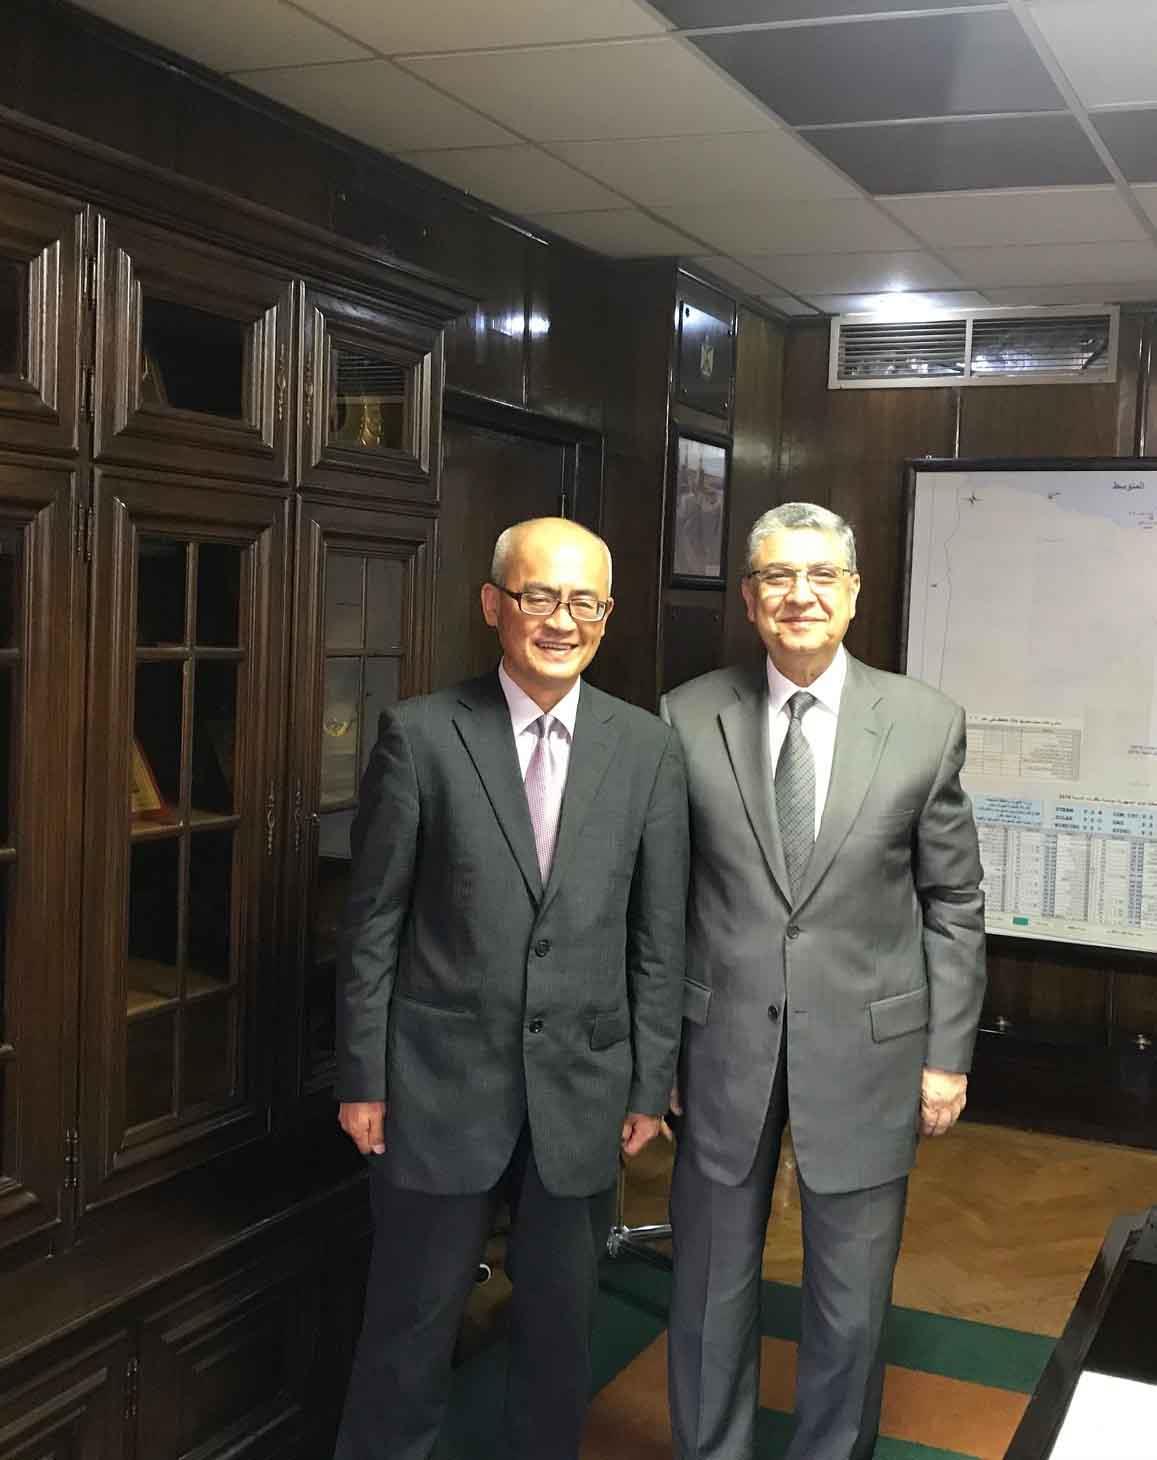 وزير الكهرباء مع ممثل شركة هيتاشي ليميتد اليابانية